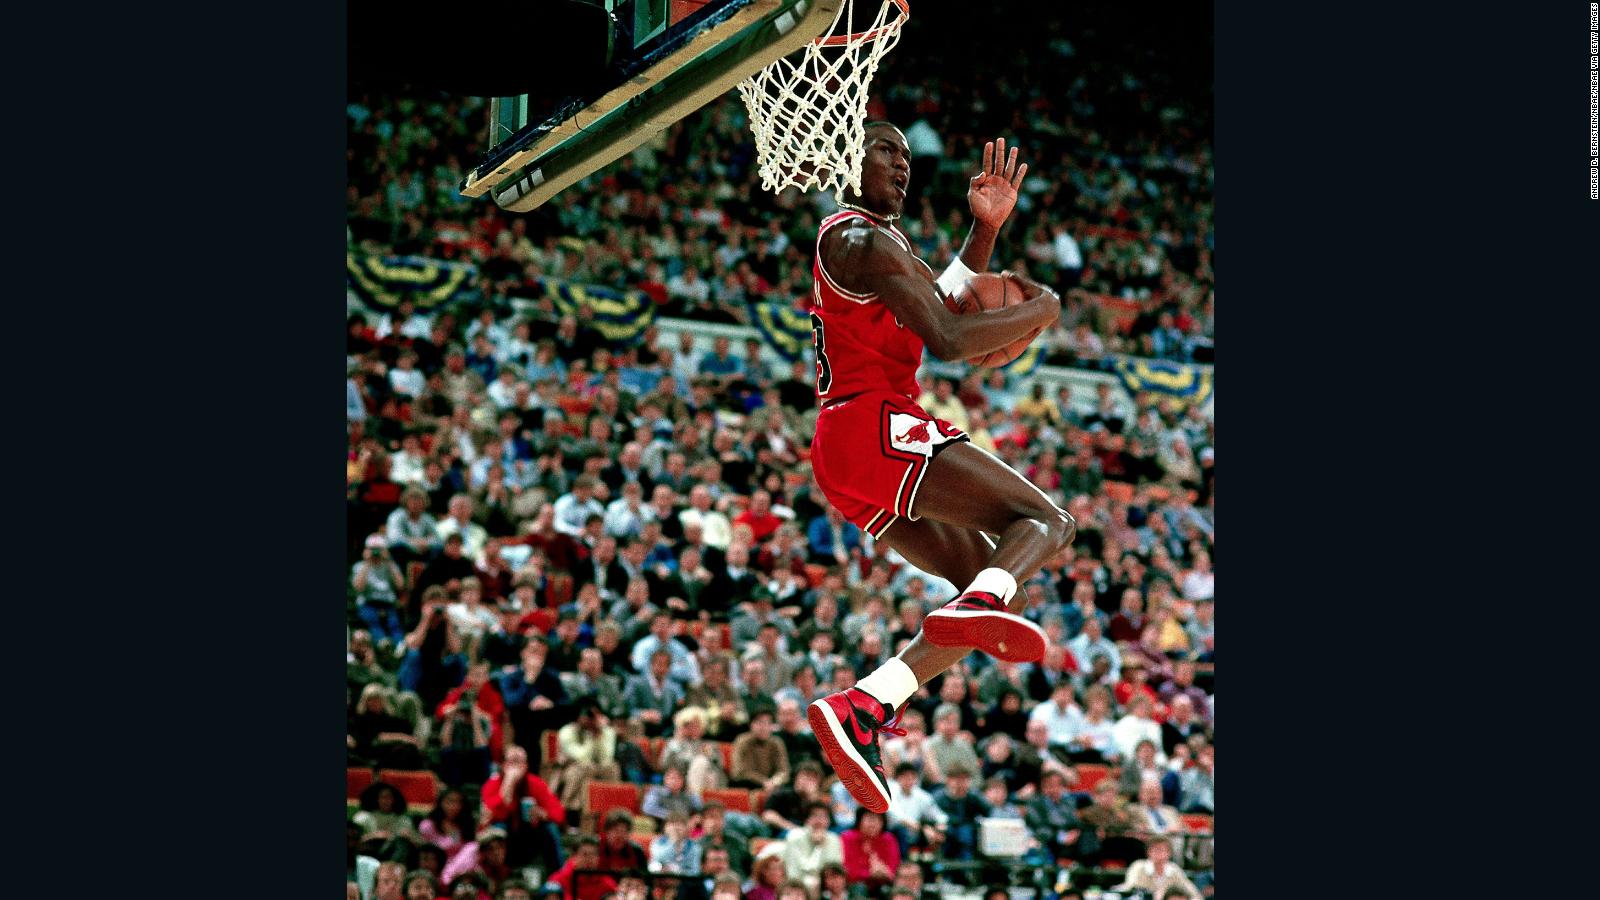 Michael Jordan's sneakers and NBA ban 